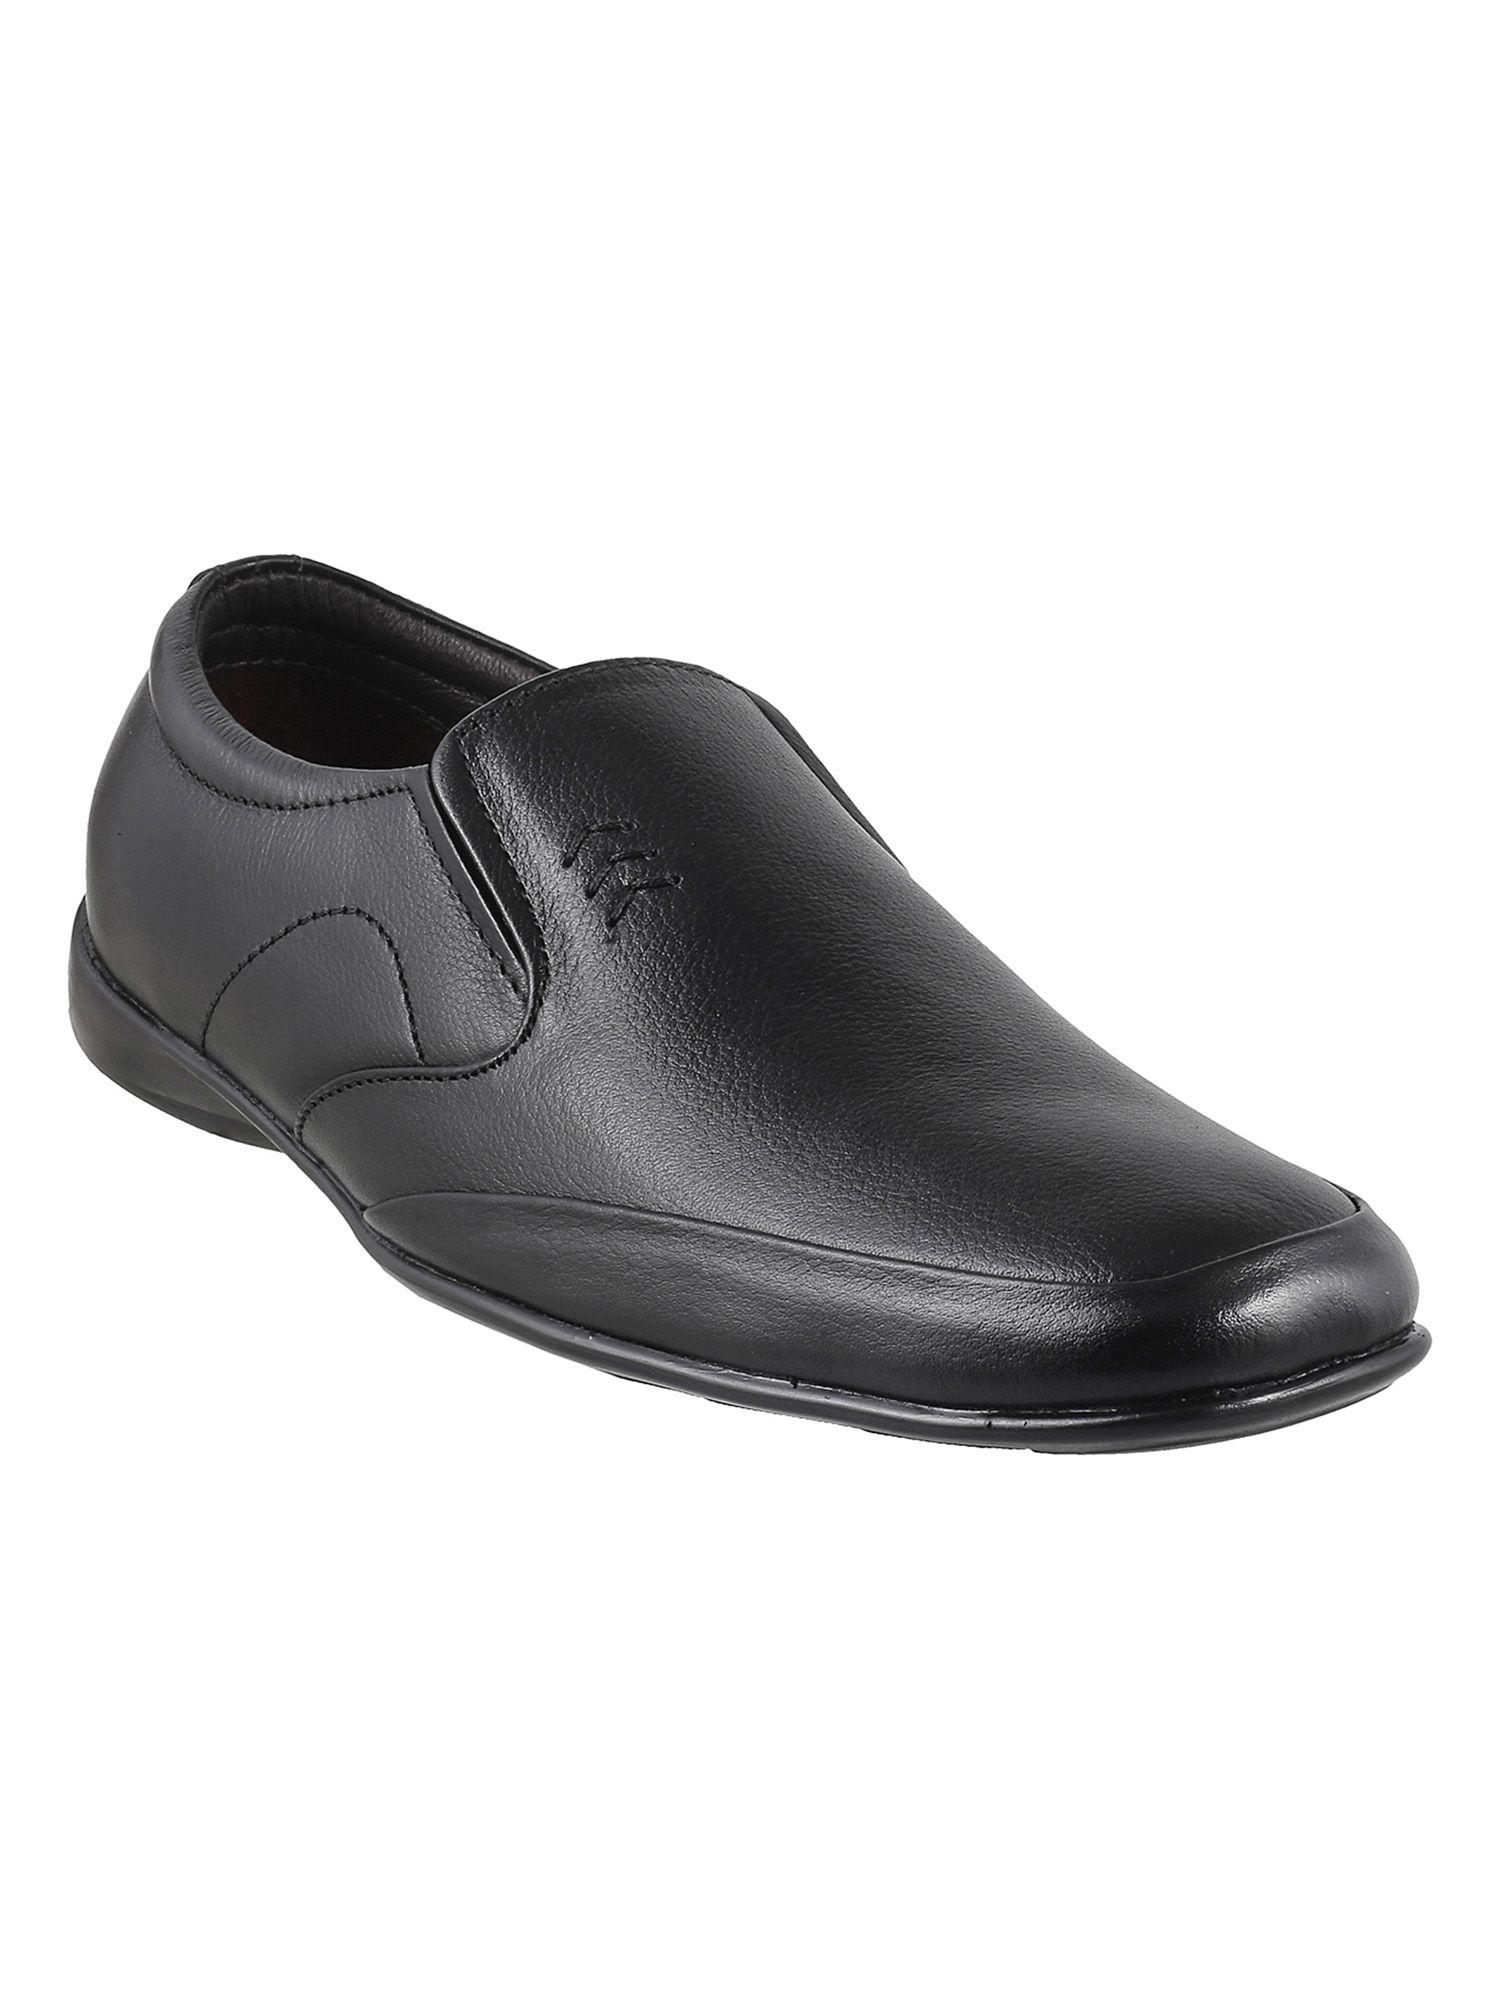 men's-black-formal-shoes